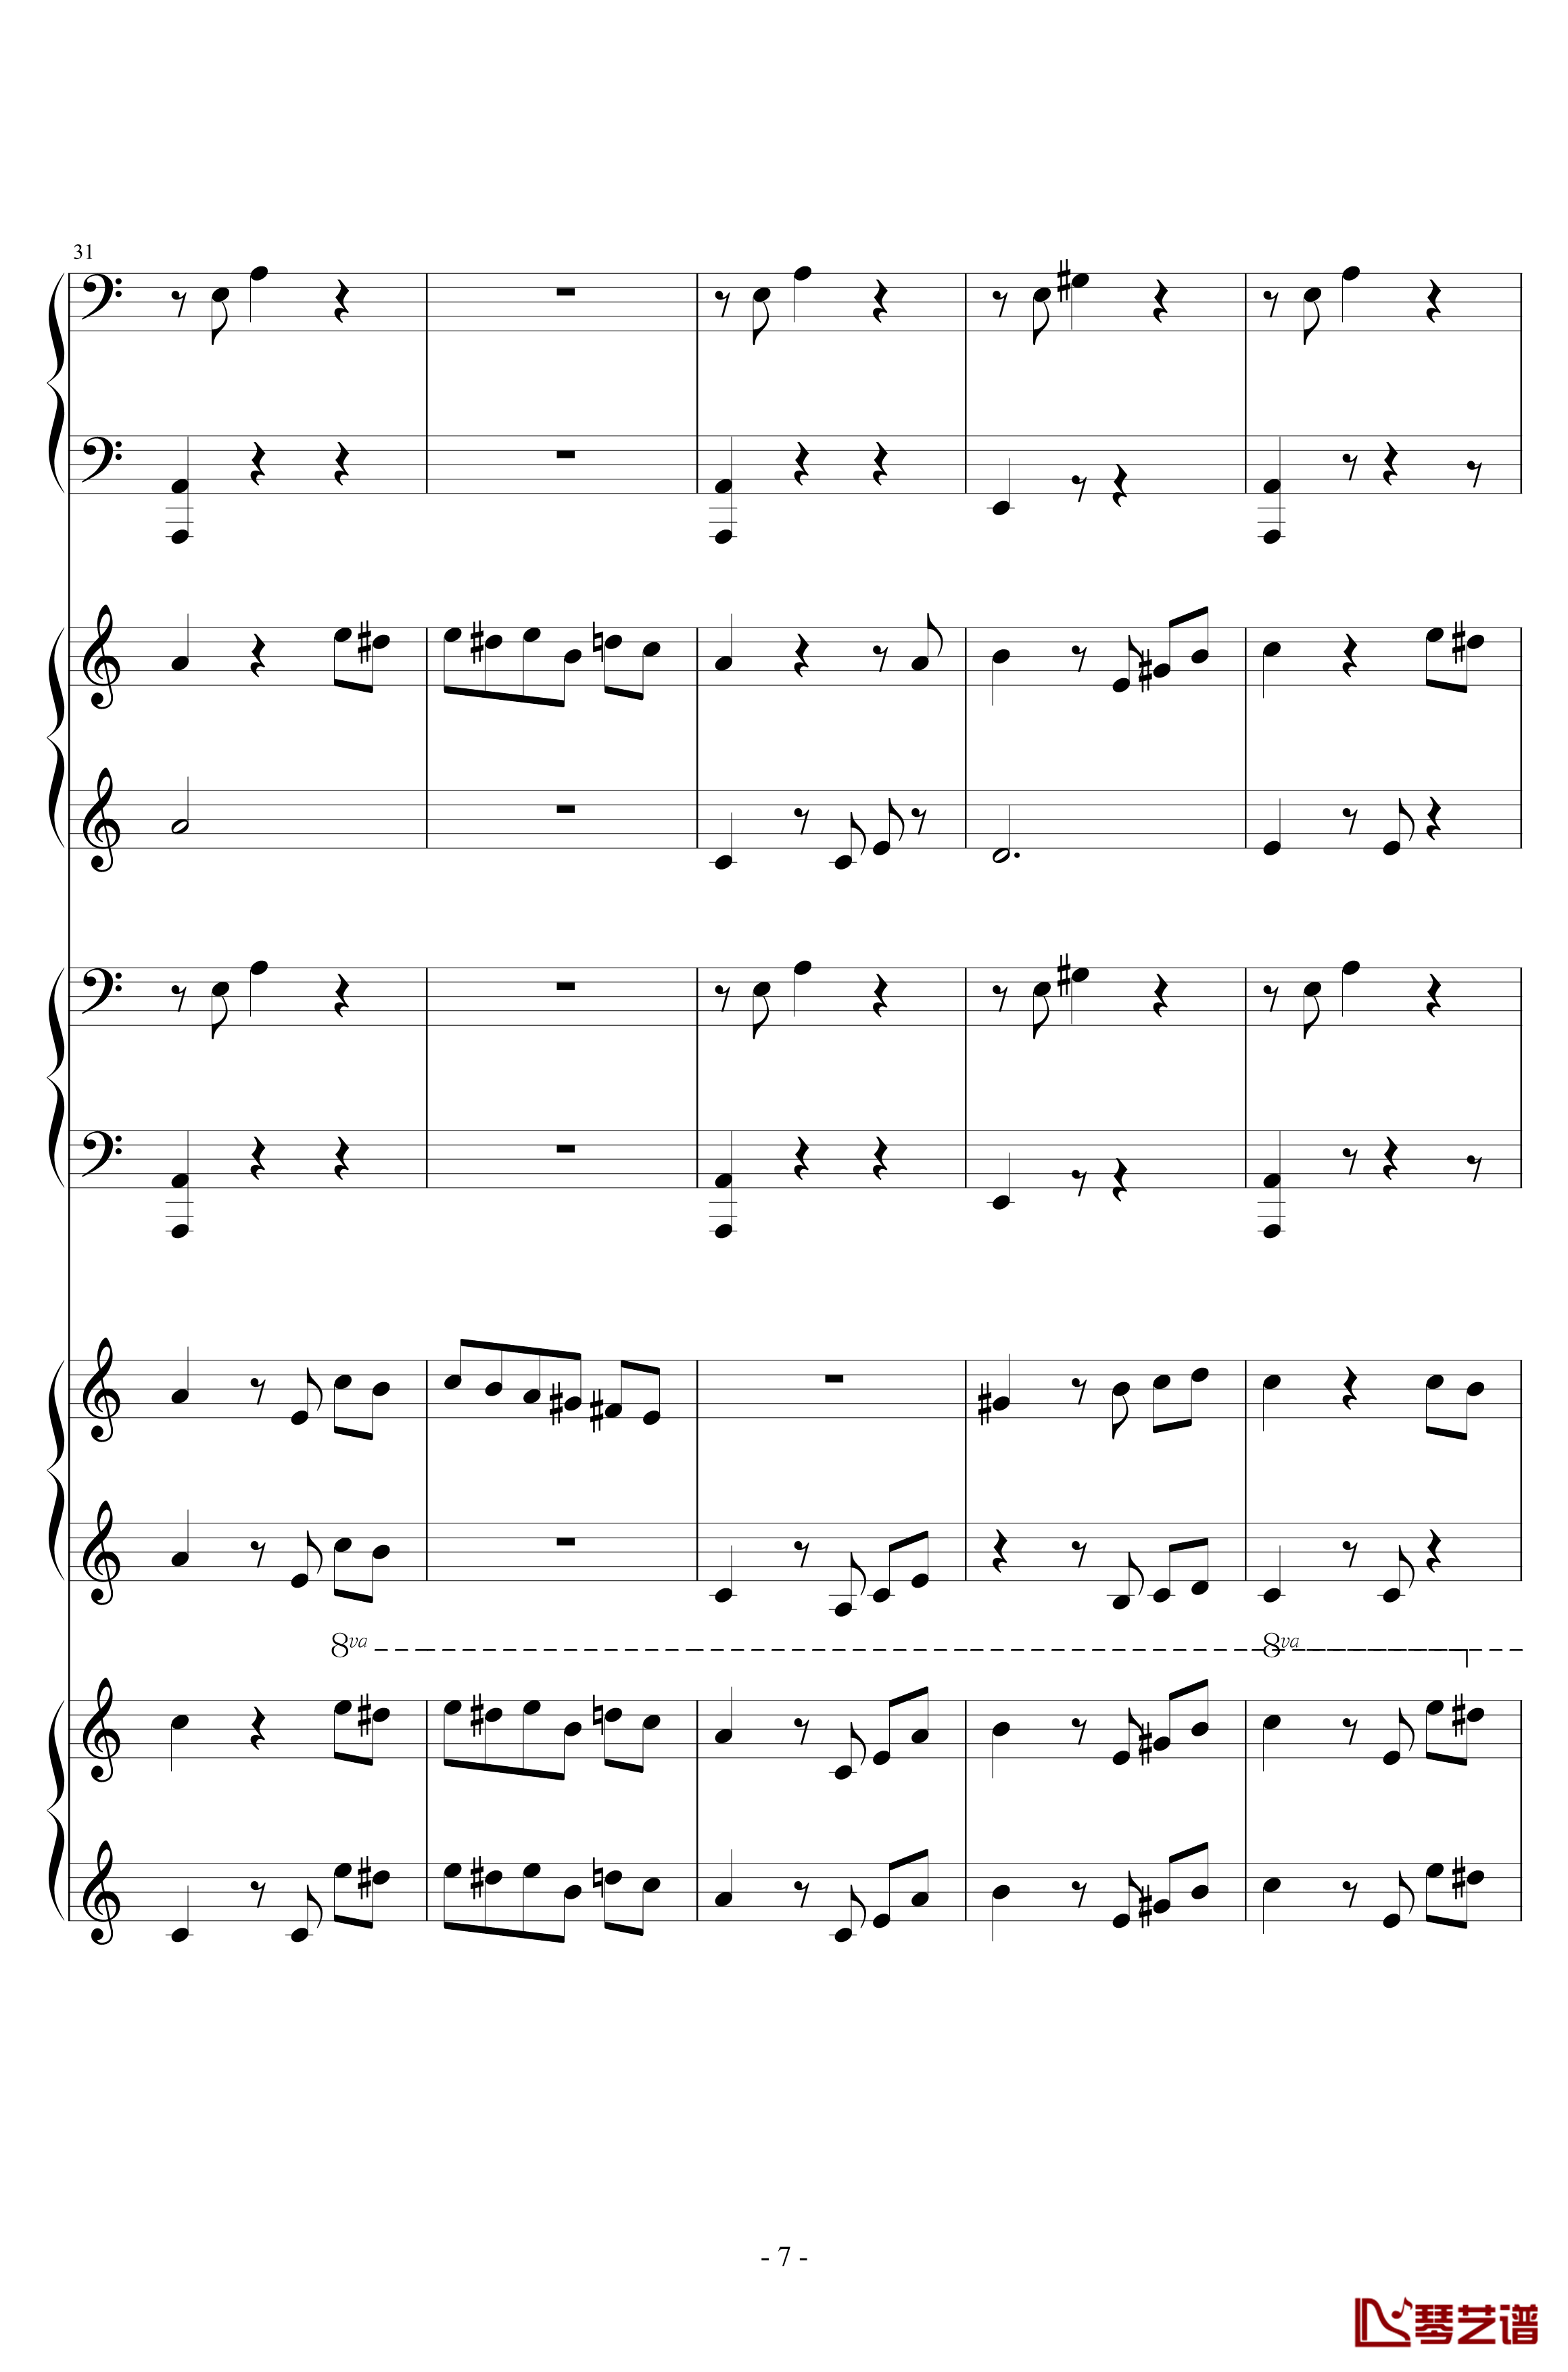 献给爱丽丝钢琴谱-合奏版-贝多芬-beethoven7